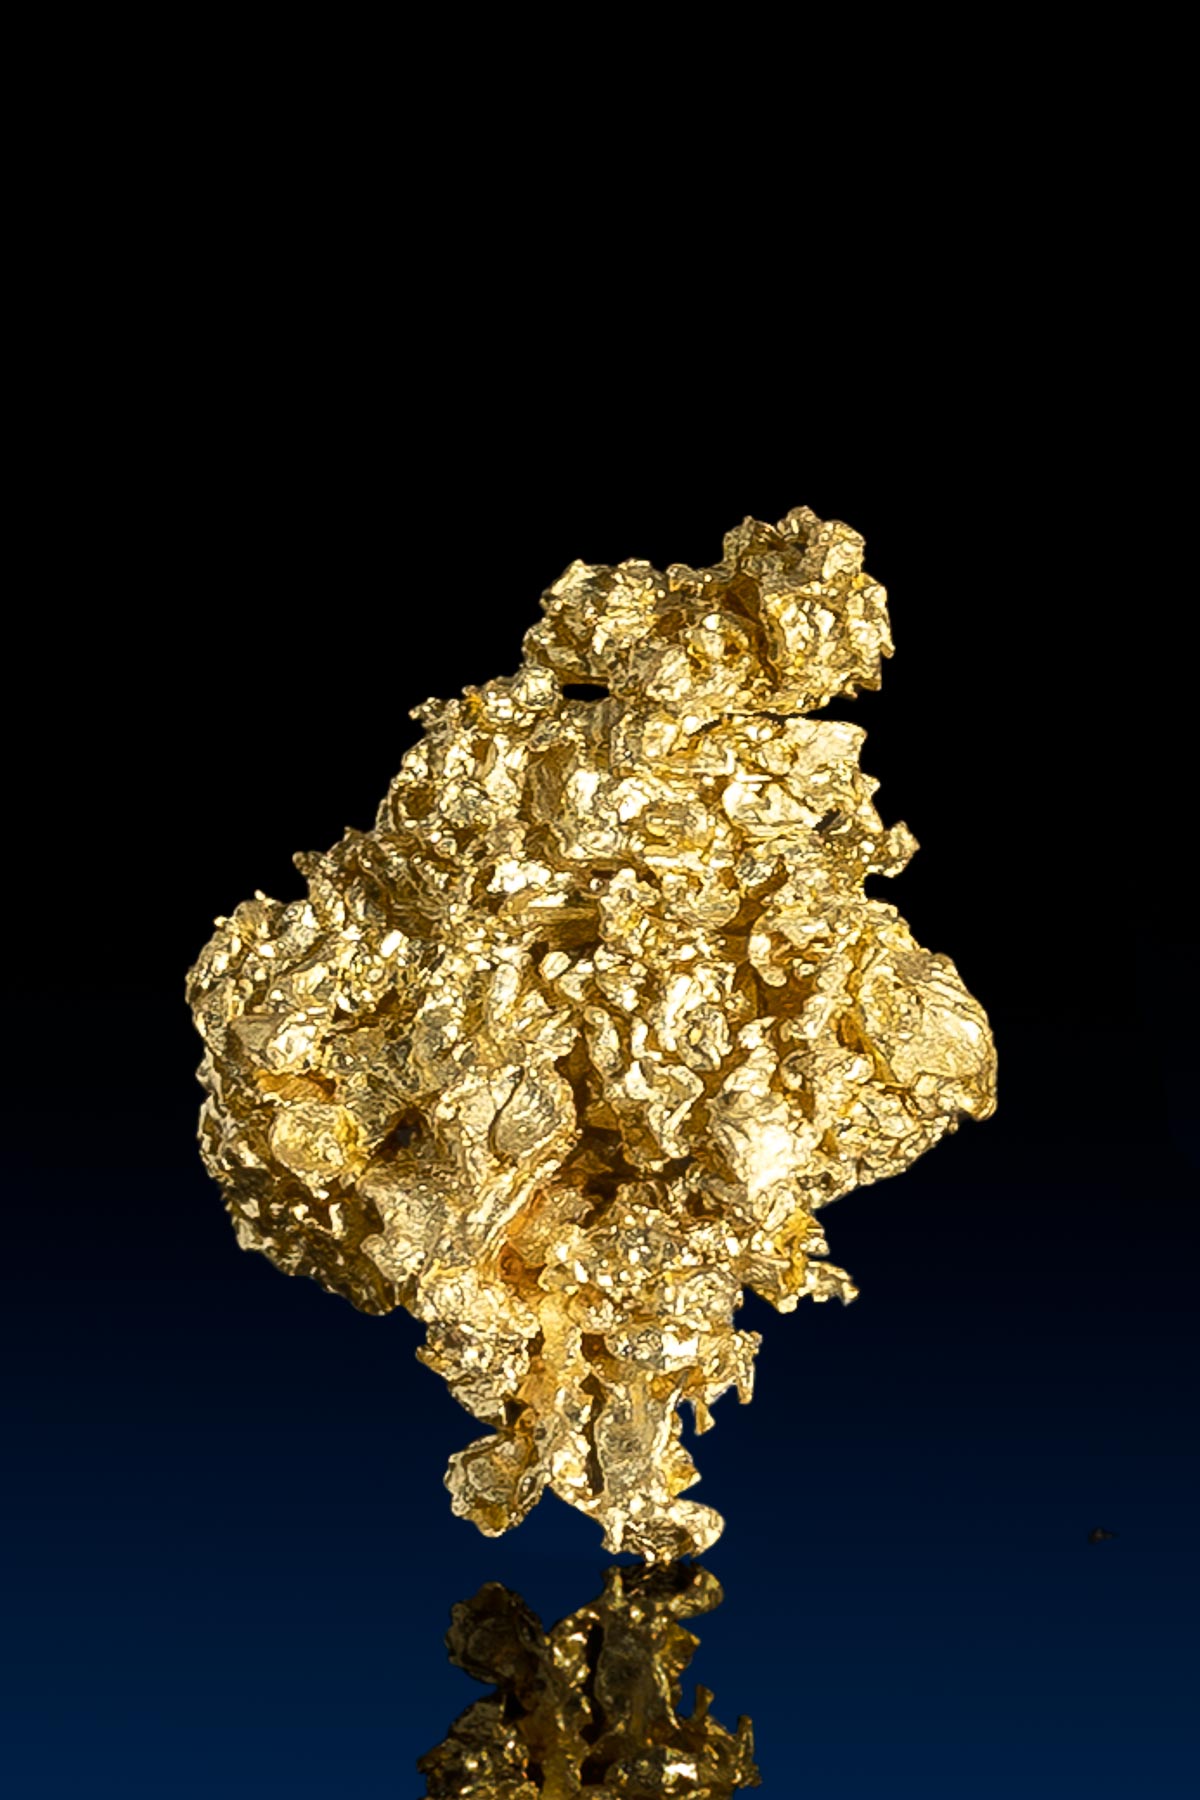 Interesting Nevada Natural Gold Nugget - 111 grams